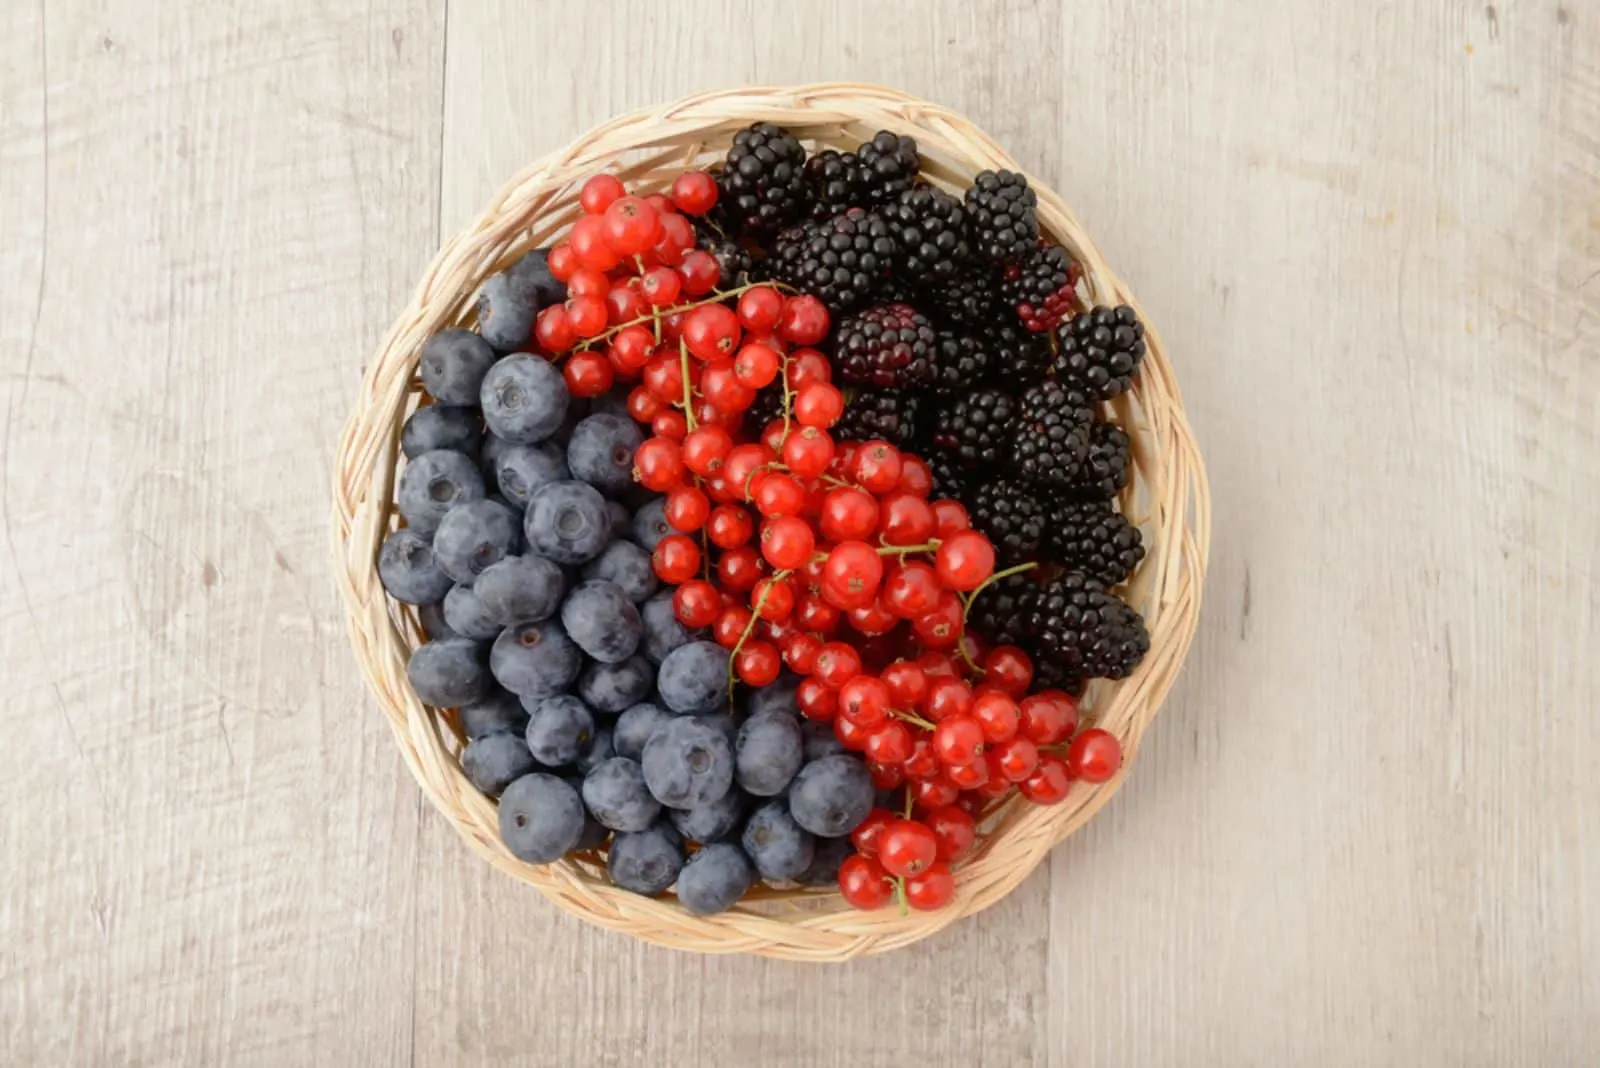 blueberries, currants and blackberries basket